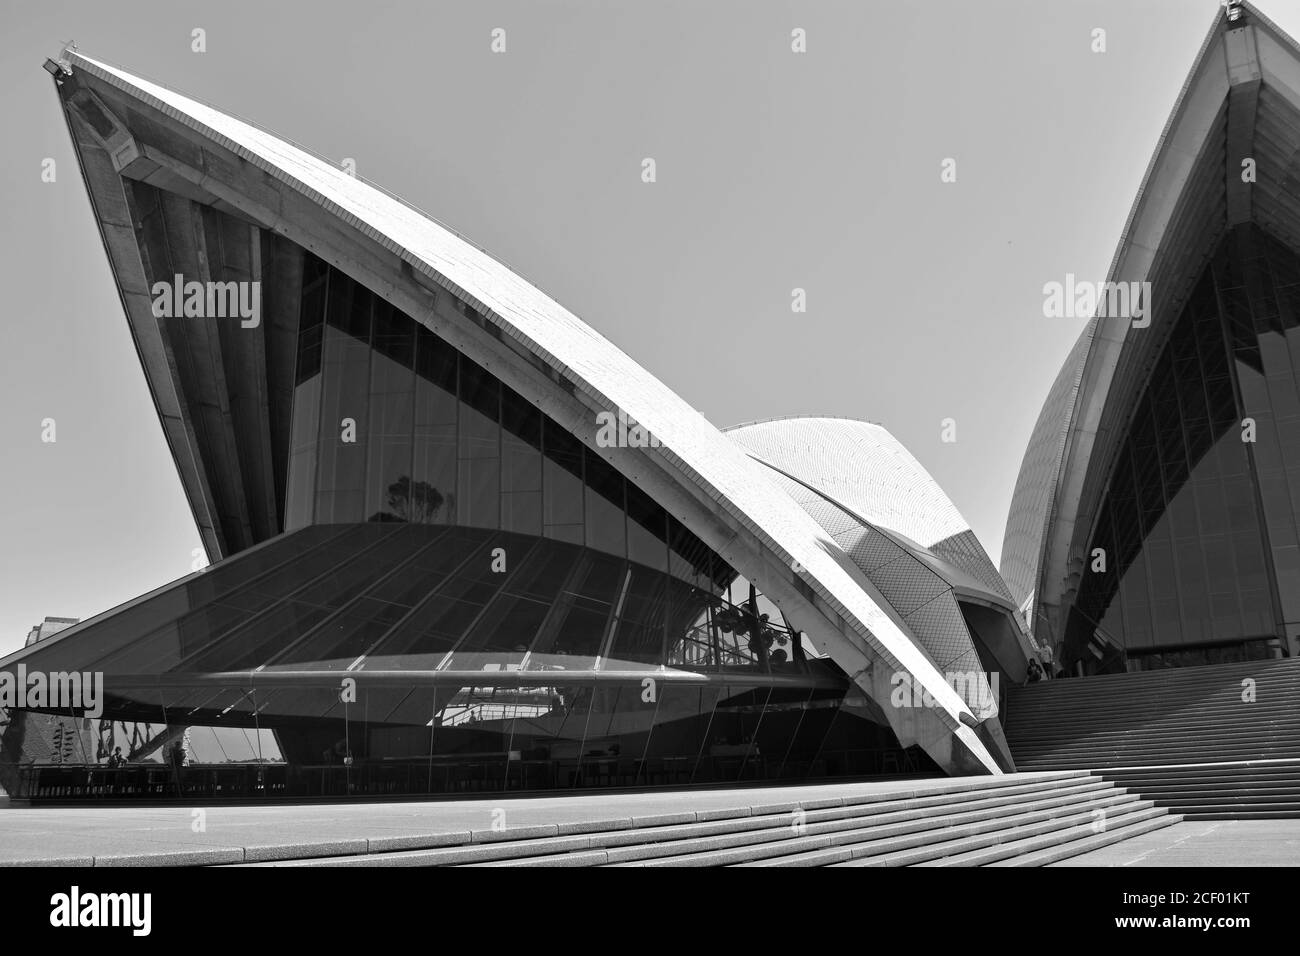 Ein abstraktes Schwarz-Weiß-Bild des Opernhauses von Sydney. Die dramatischen Winkel der Segel wie Dachlinie erheben sich gegen einen klaren Himmel. Australien Stockfoto